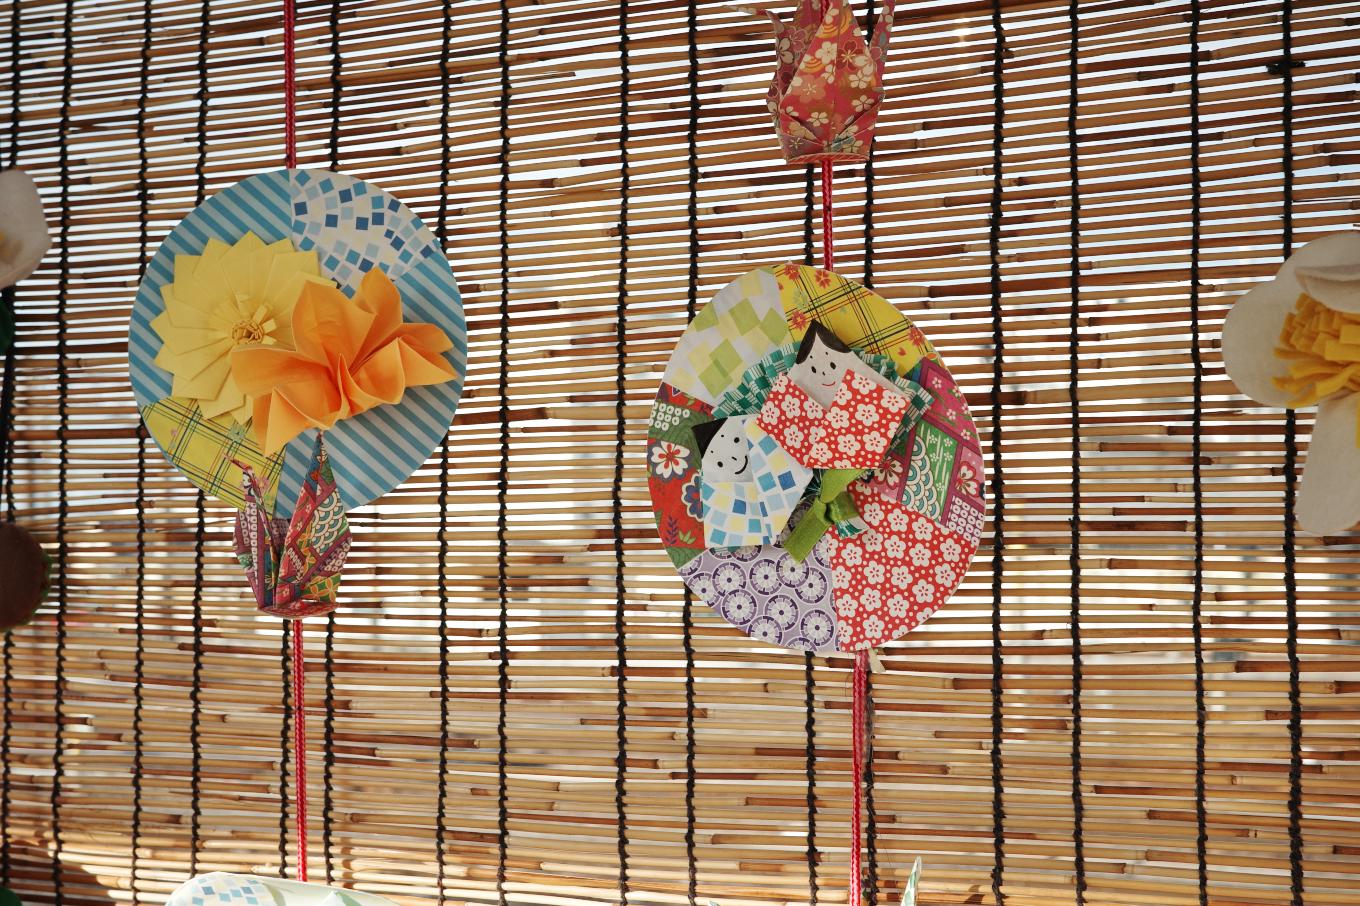 篠ノ井線ホーム待合室に施された、すだれや折り紙による装飾。